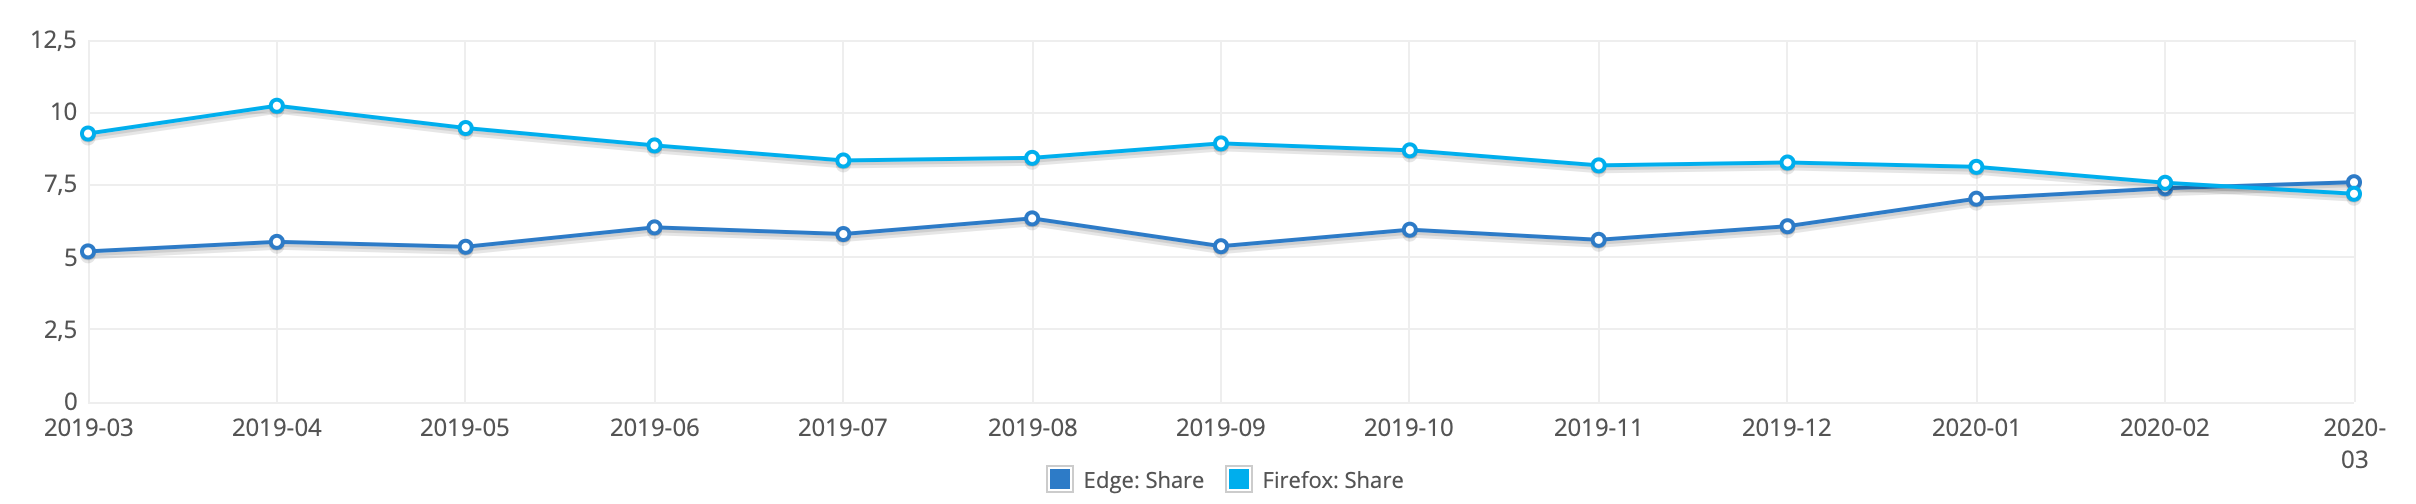 Microsoft Edge впервые стал вторым по популярности браузером, обойдя Firefox в марте